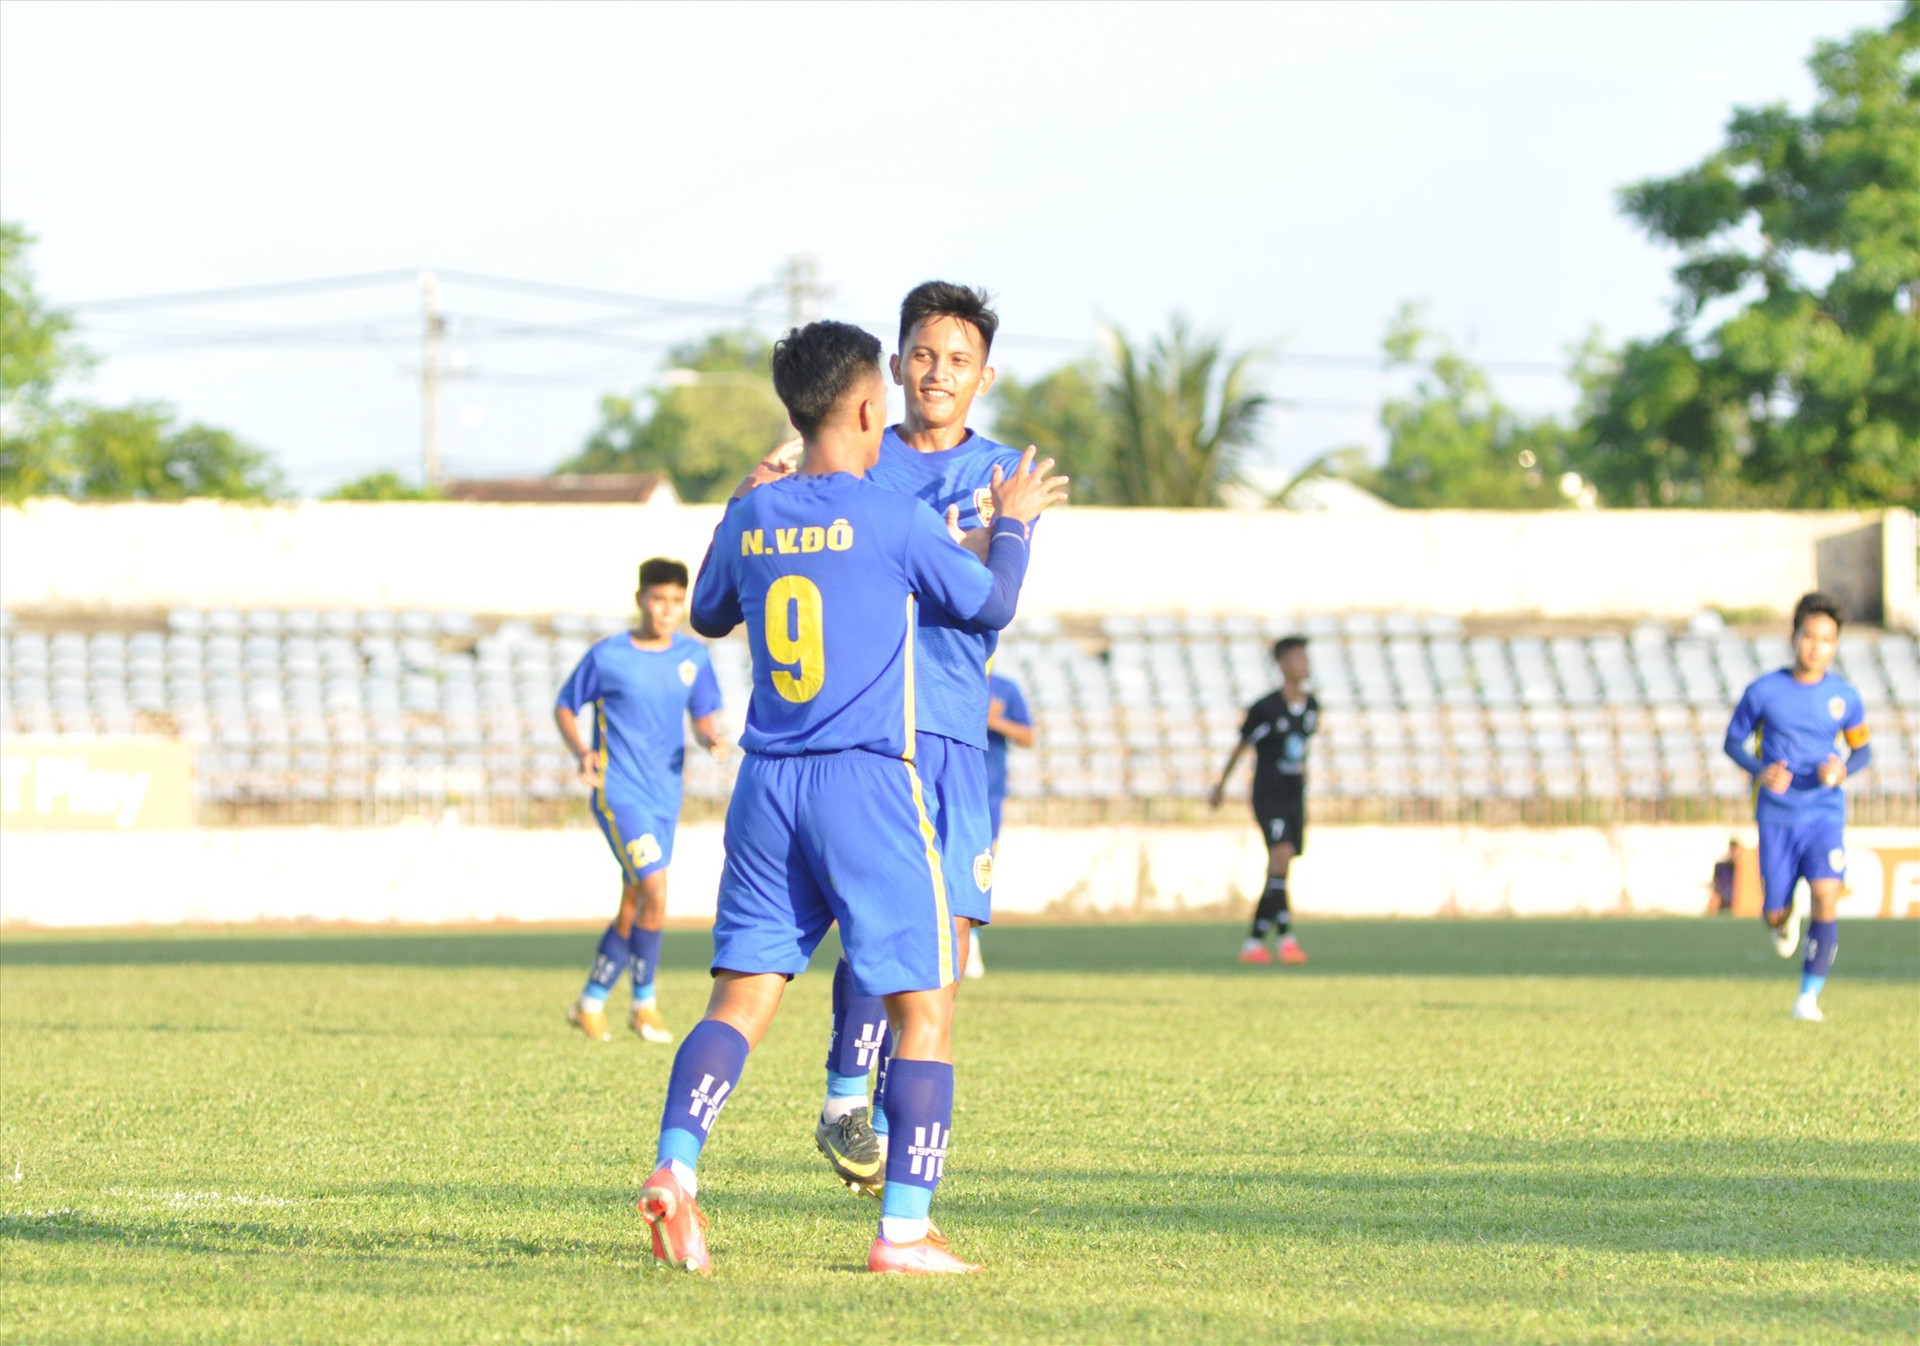 Nguyễn Văn Đô (số 9) được đồng đội chia vui sau khi ghi bàn thắng. Ảnh:A.S